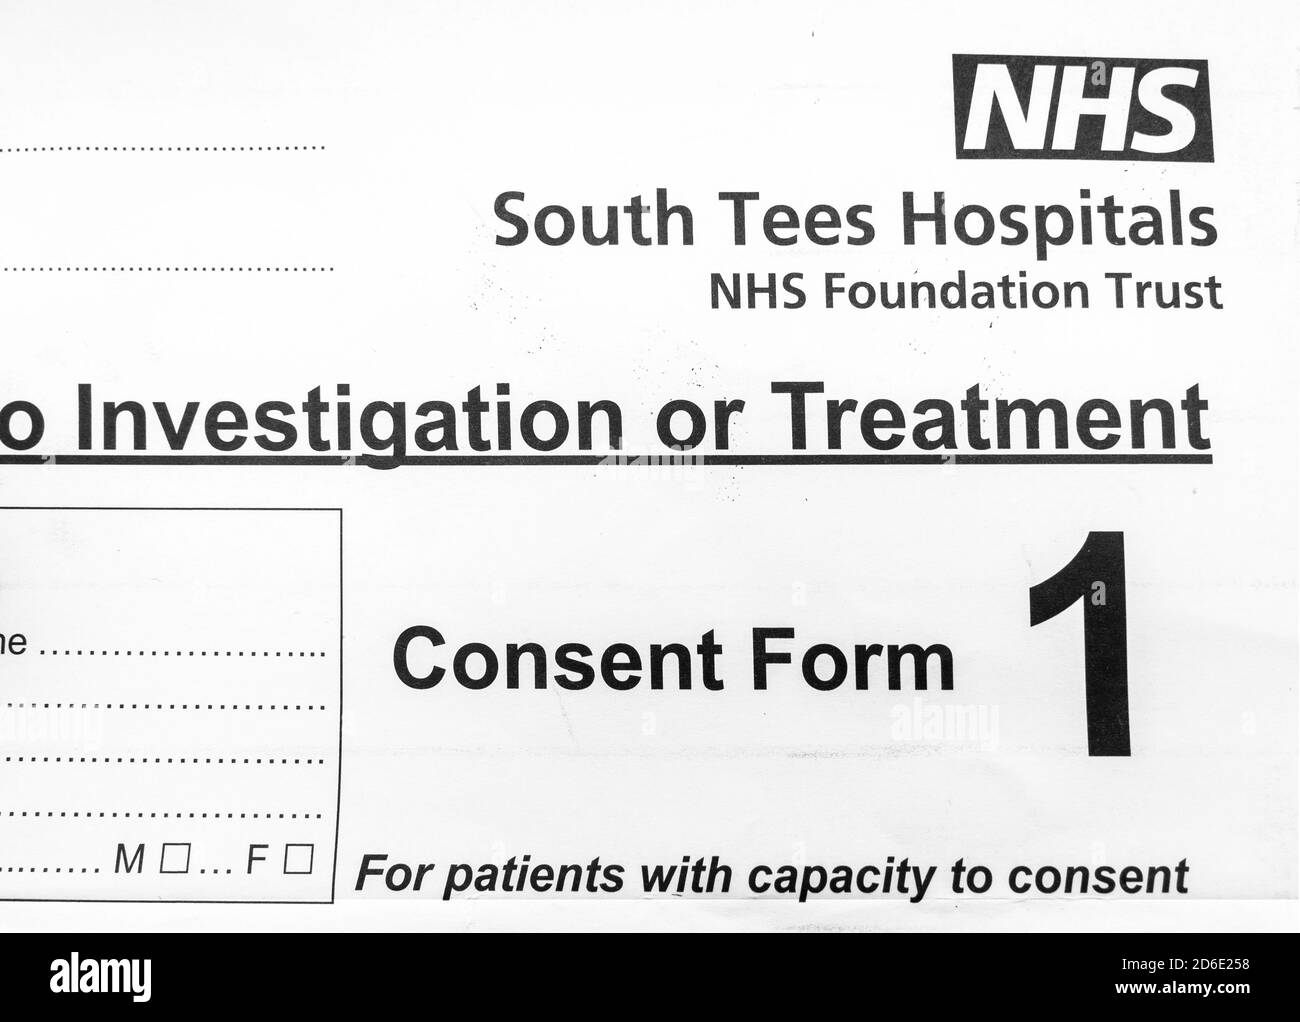 NHS South Tees Hospitals Formulario de consentimiento, que los pacientes tienen que firmar antes de someterse a cirugía a menos que no sean competentes para hacerlo Foto de stock